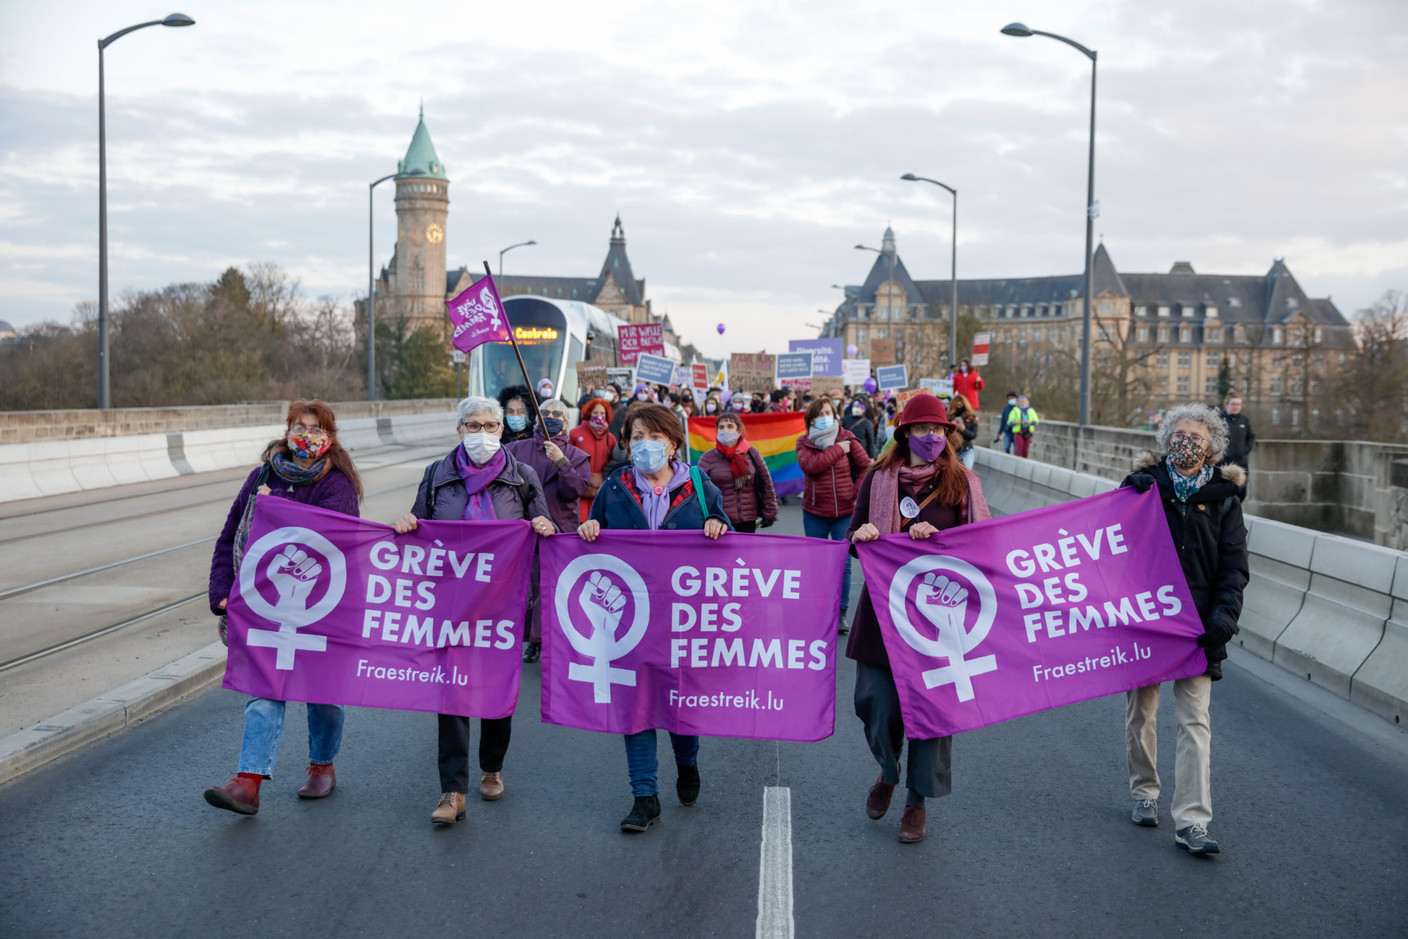 Le 8 mars, les femmes sont dans les rues pour réclamer plus d’égalité et d’équité, à l’occasion de la Grève des femmes. (Photo: Romain Gamba/Maison Moderne)